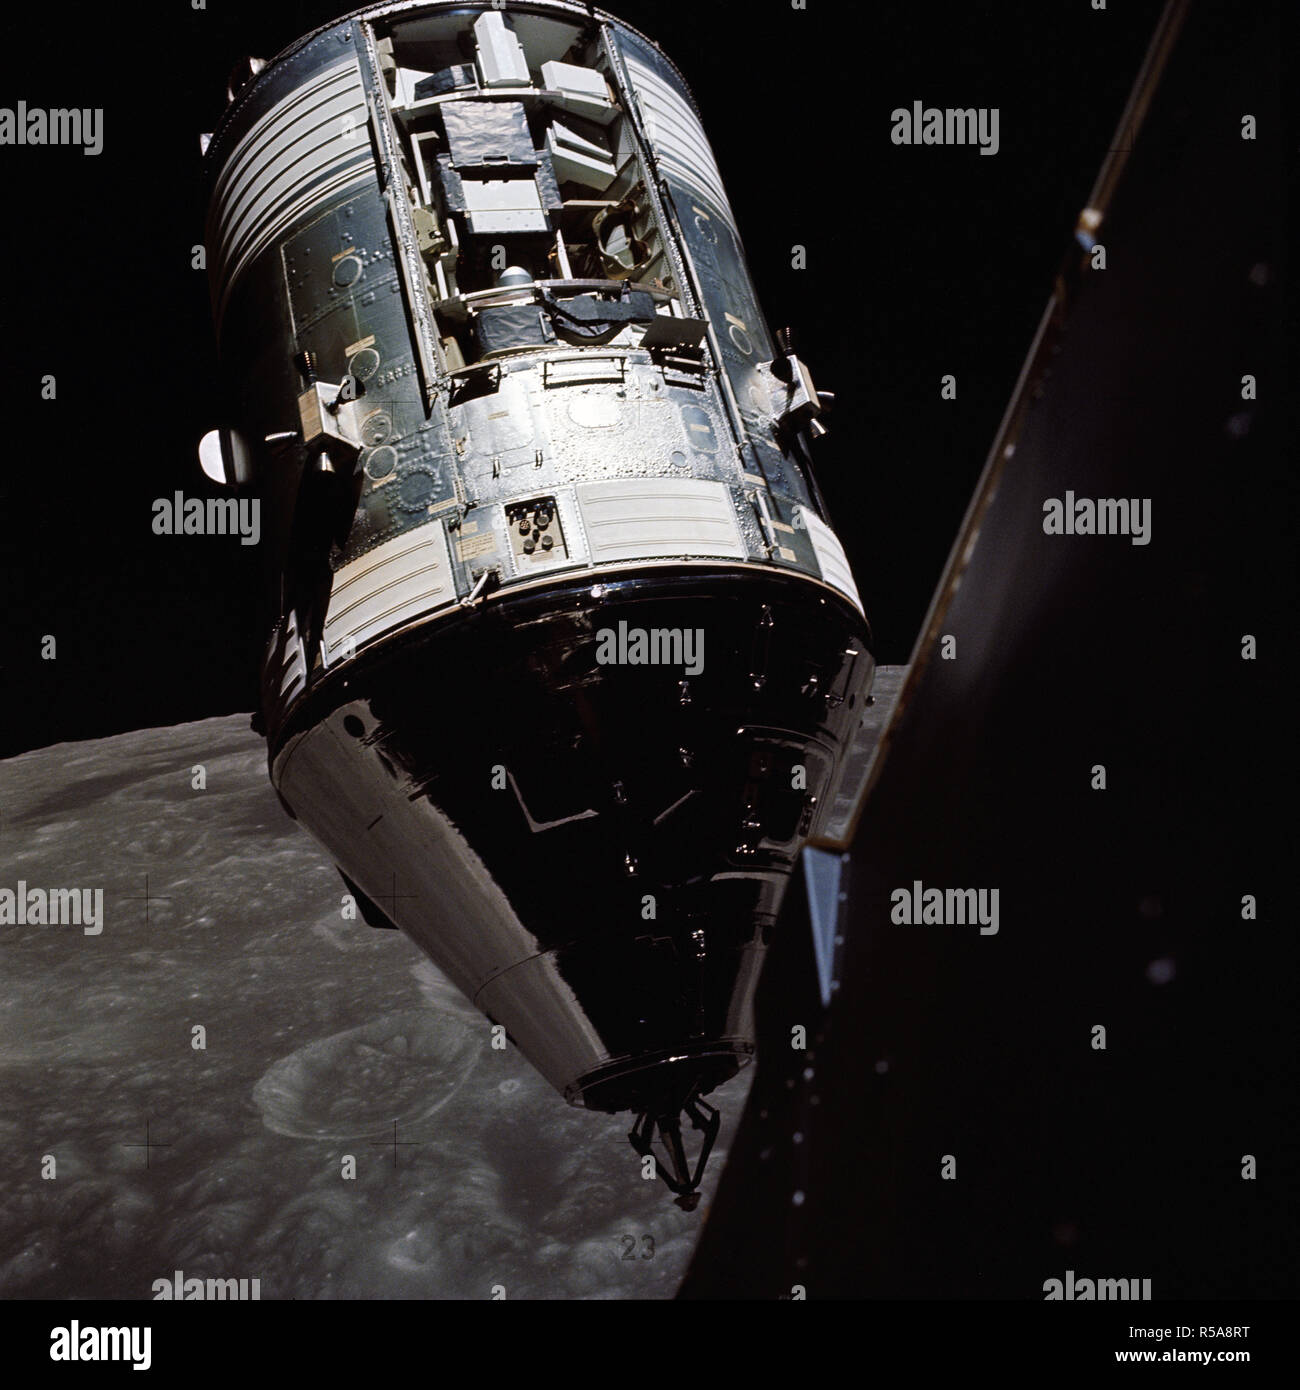 (14 Dezember 1972) - - - eine eine eine eine eine ausgezeichnete Sicht auf die Apollo 17 Befehl und Service Module (CSM) von der Landefähre (LM) "Challenger" während der Anflug- und Andockmanöver Manöver in der mondumlaufbahn fotografiert. Stockfoto